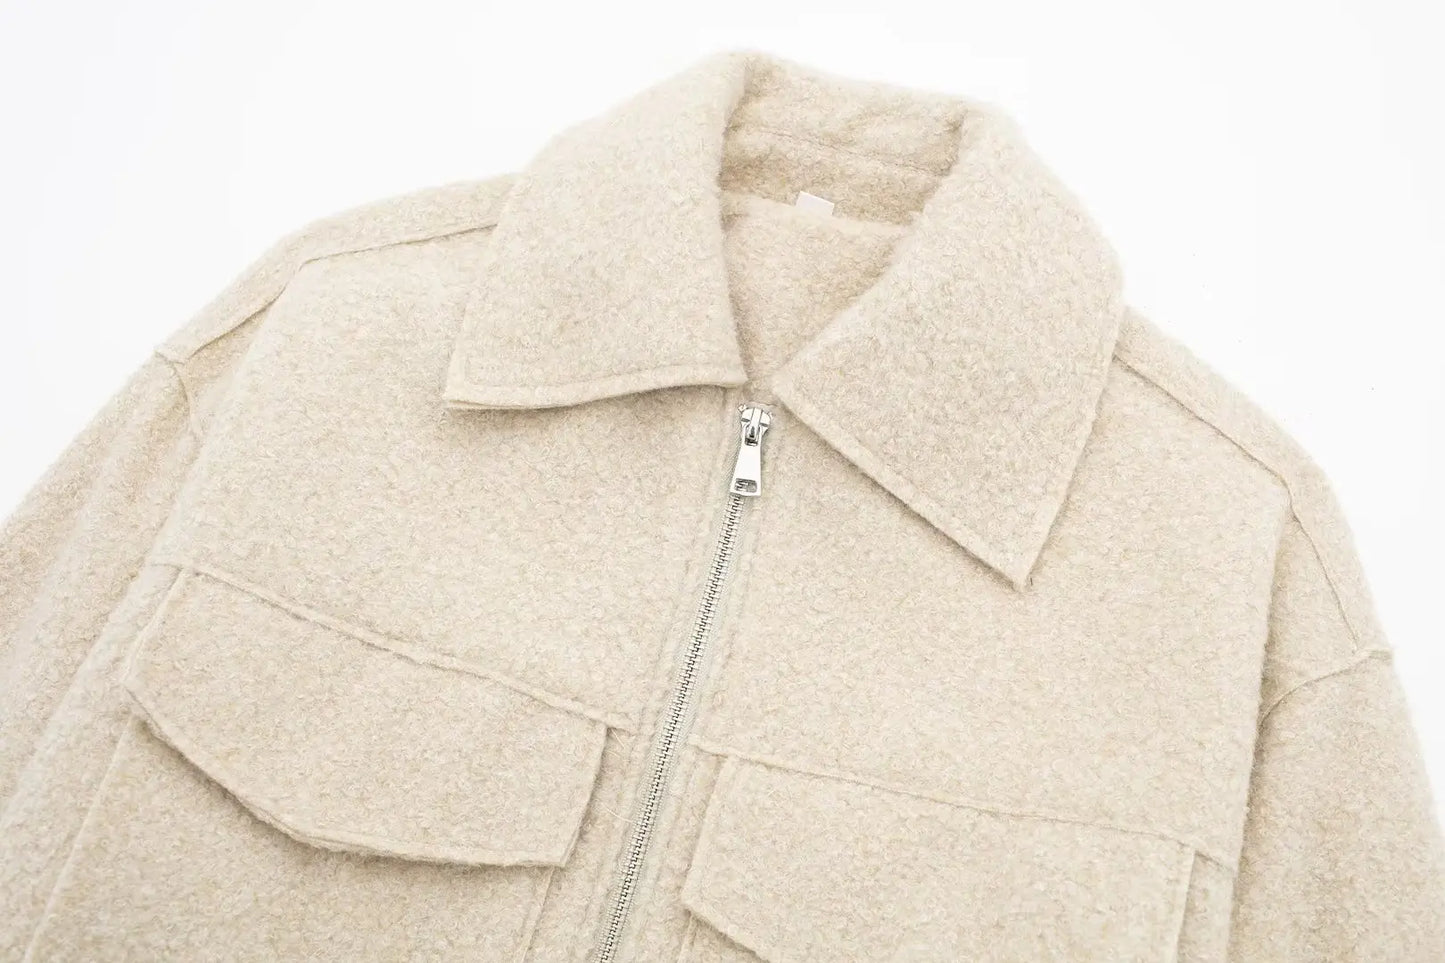 Zapinana na zamek pluszowa tweedowa krótka kurtka w stylu vintage